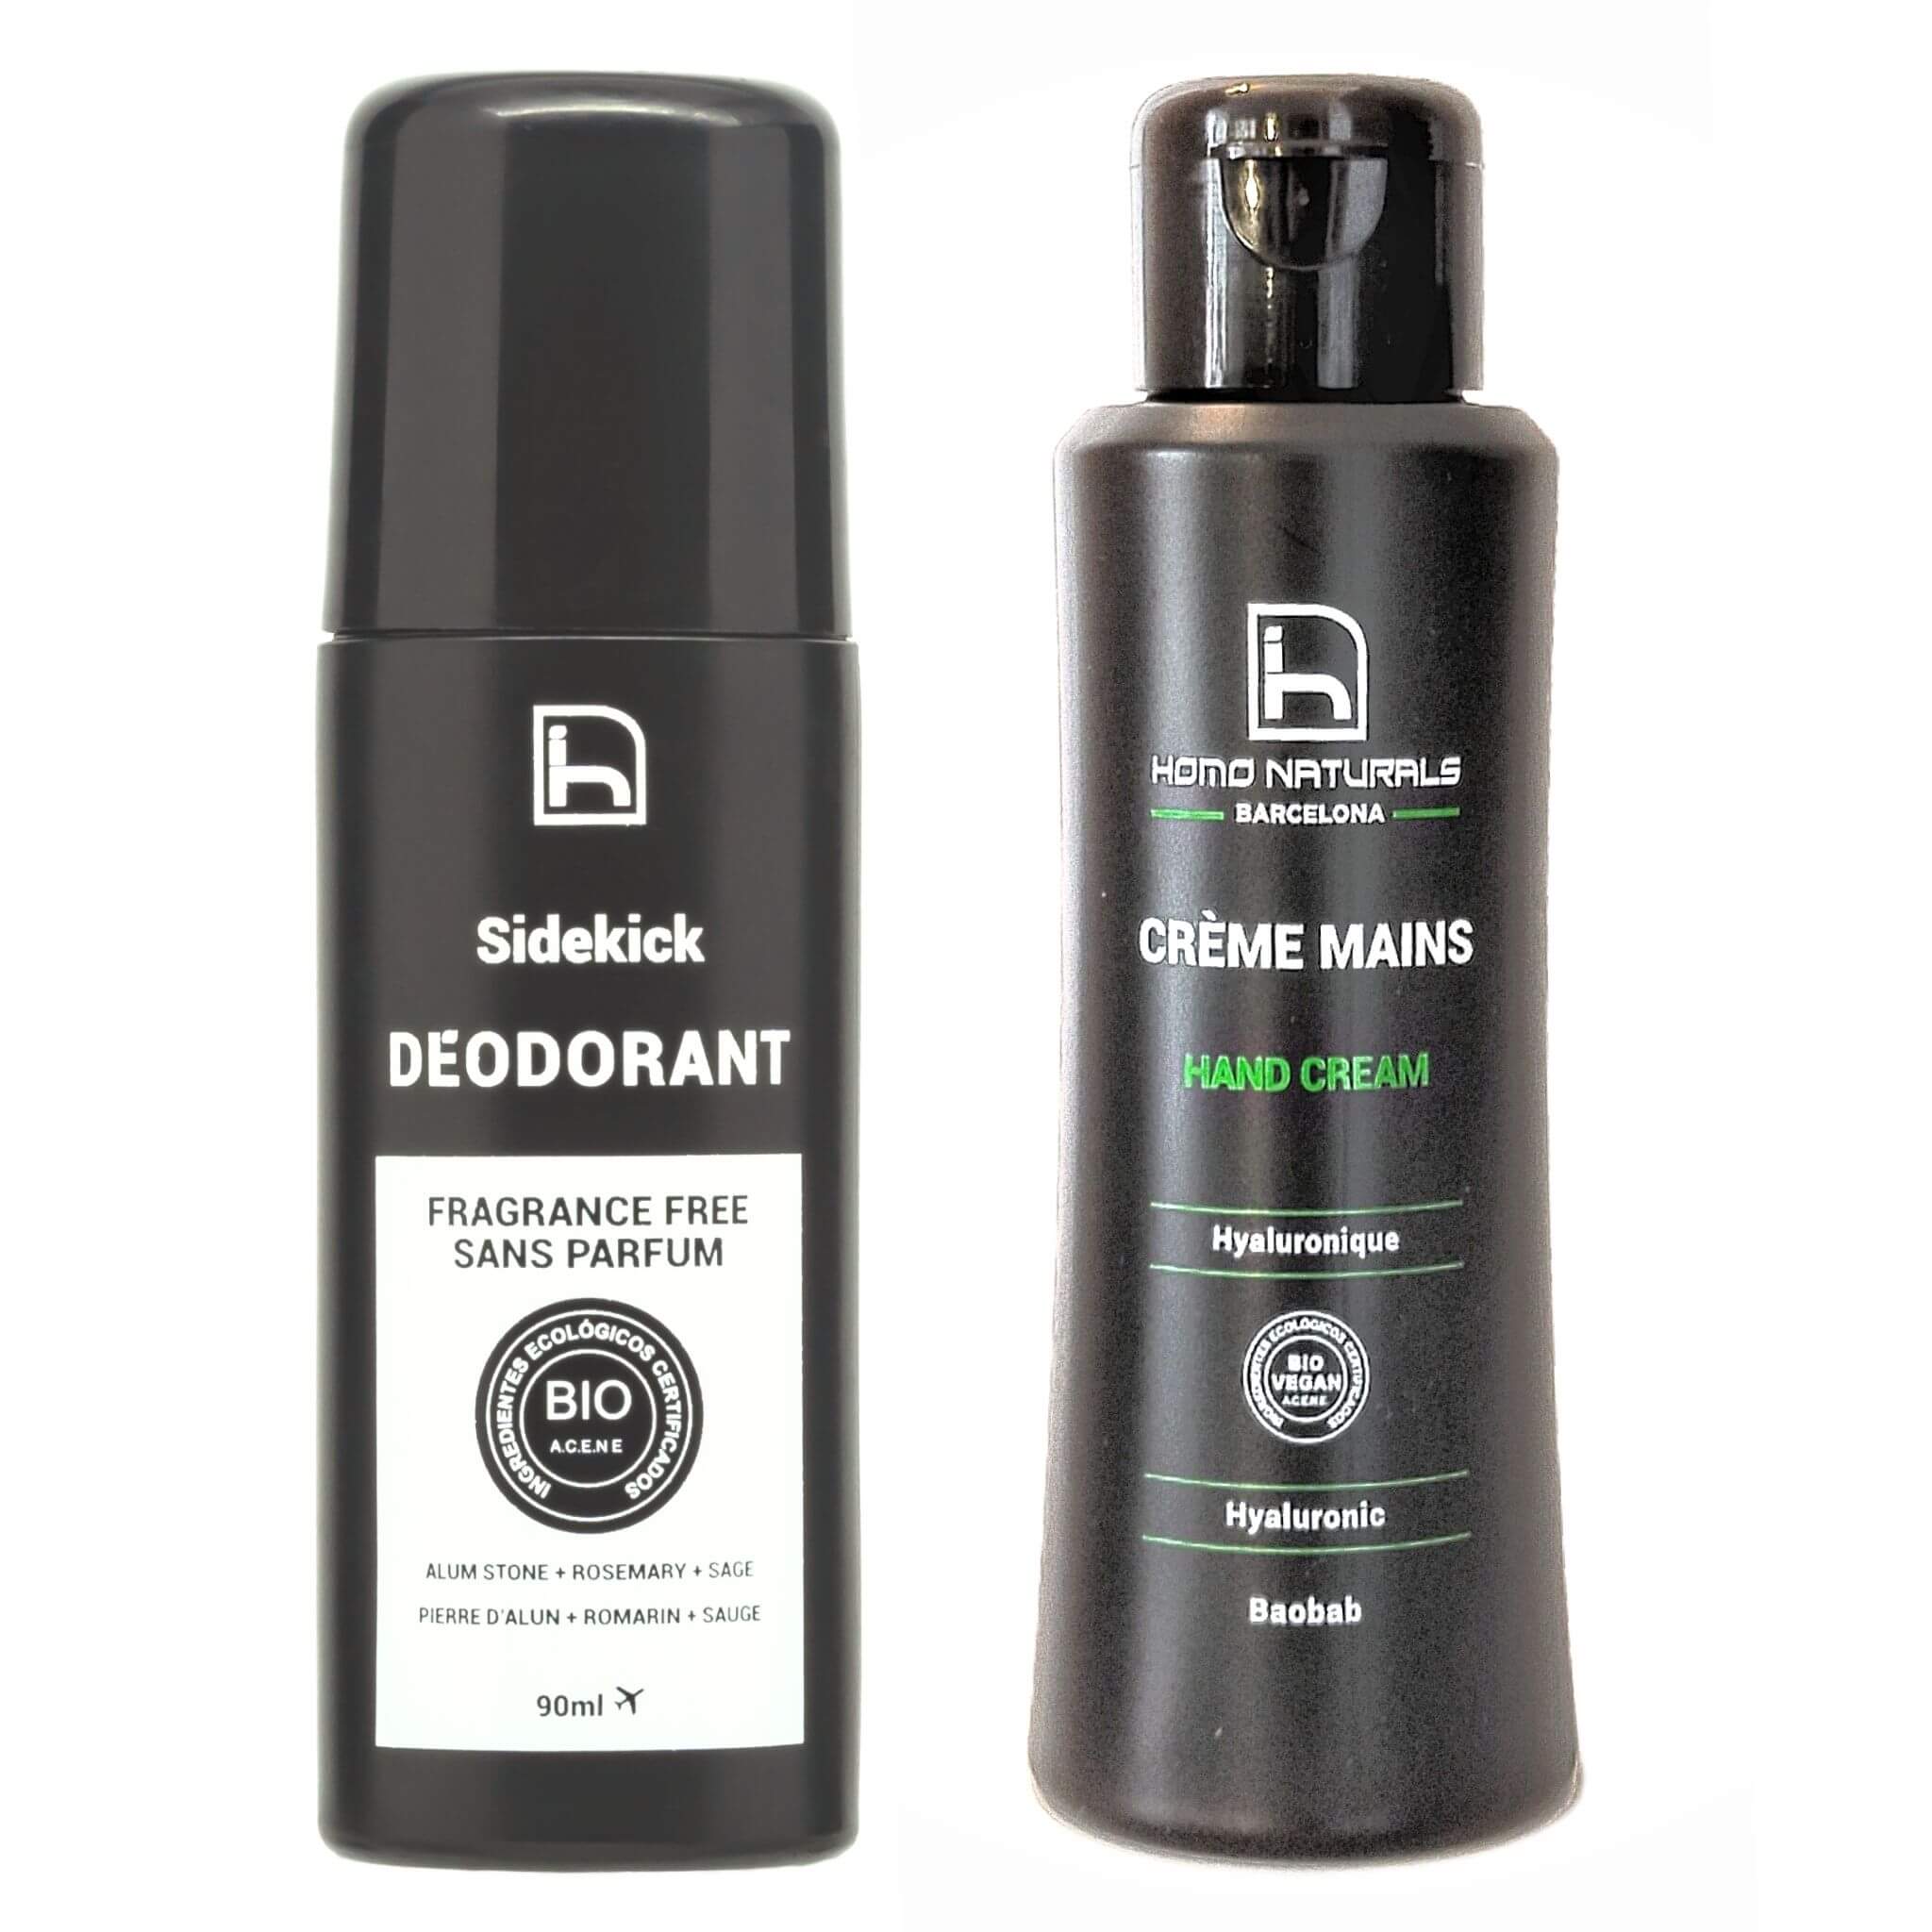 Men's natural deodorant and hand cream